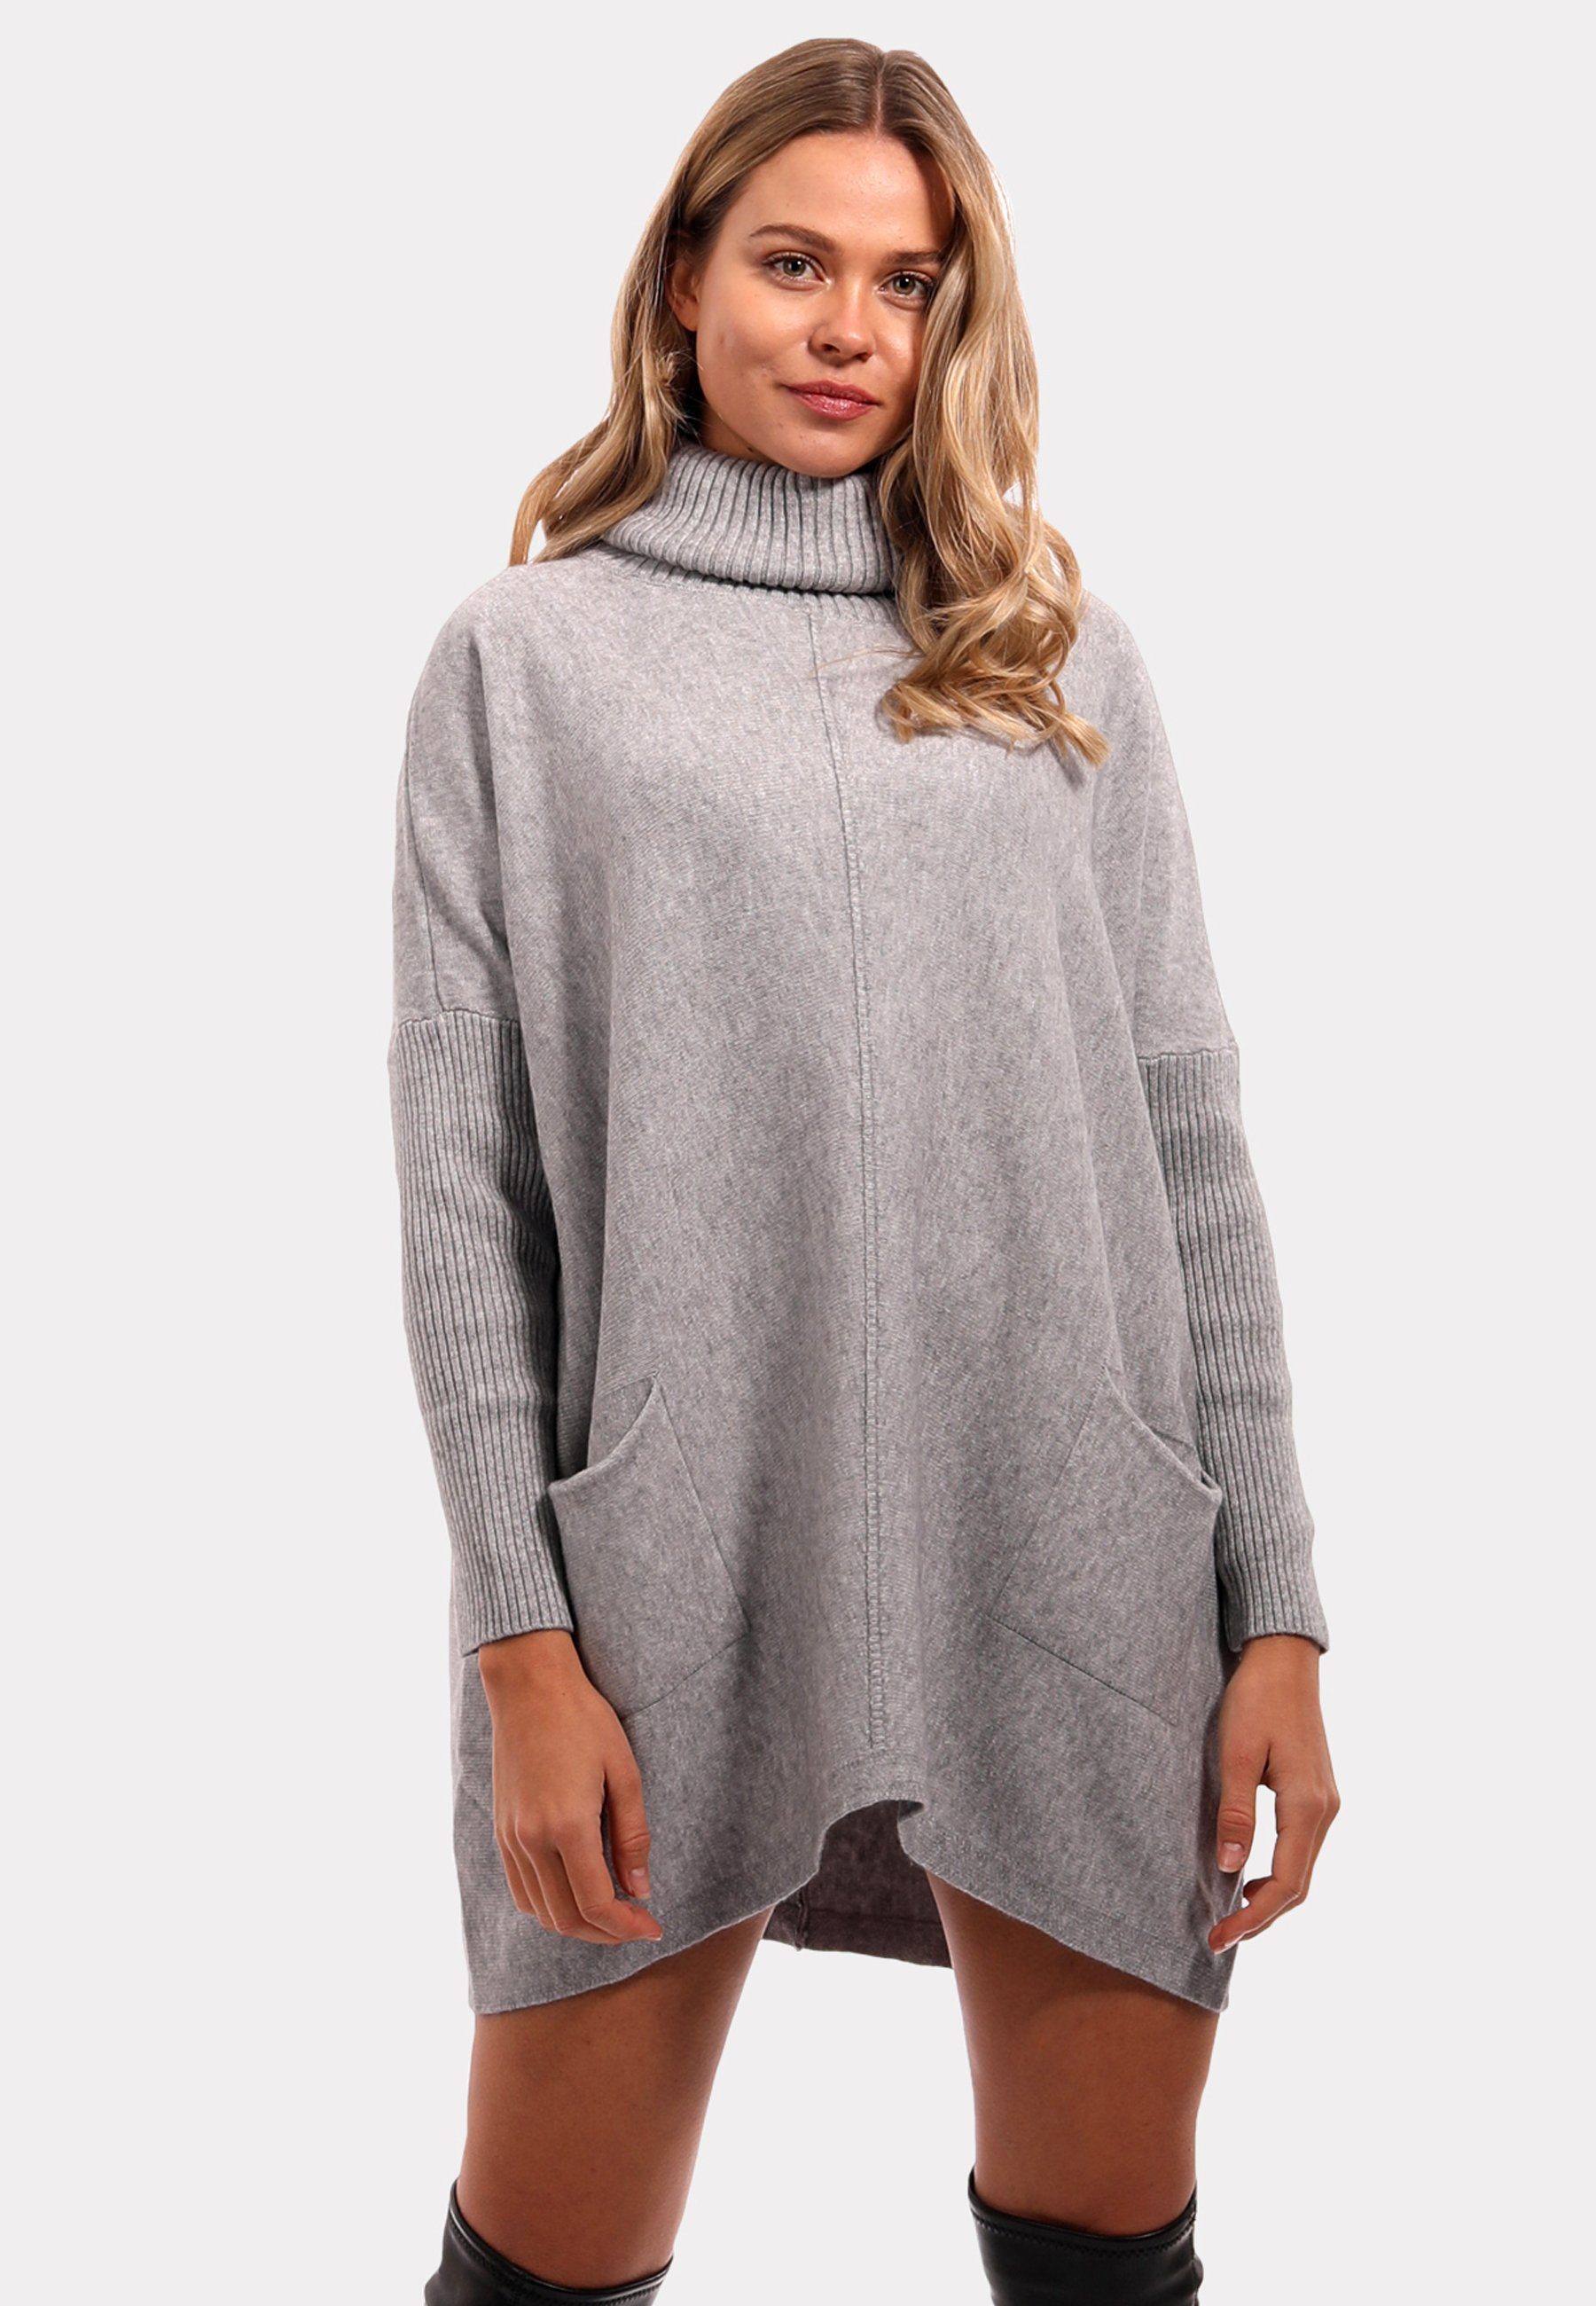 Style Feinstrick Fashion Casual Sweater Grau Rollkragenpullover YC & Strickmix aus Pullover